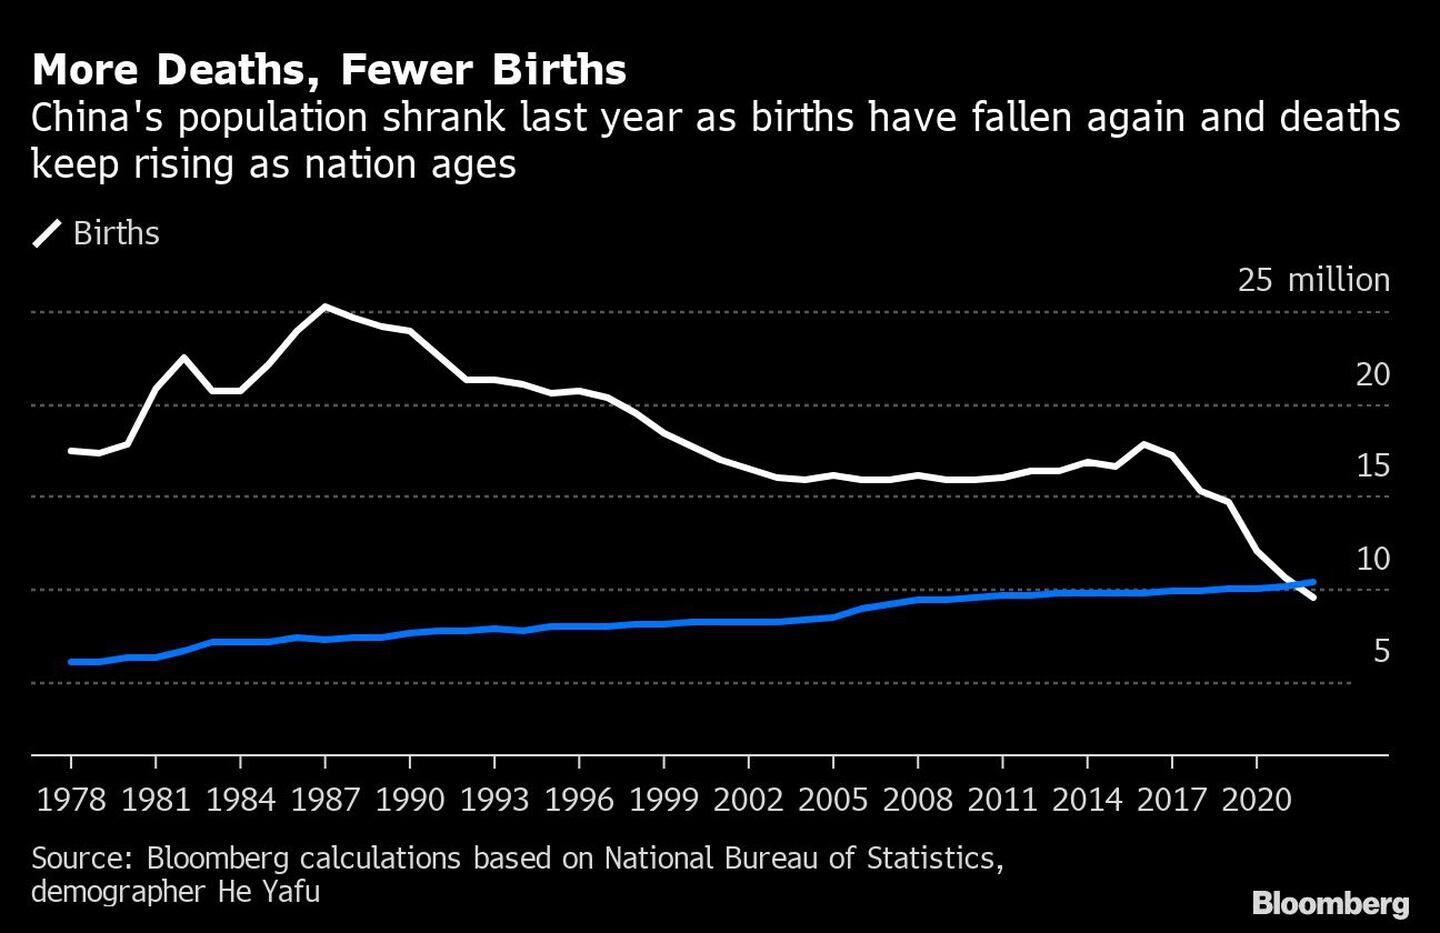 La población de China se redujo el año pasado, ya que los nacimientos han vuelto a caer y las muertes siguen aumentando a medida que la nación envejece.dfd